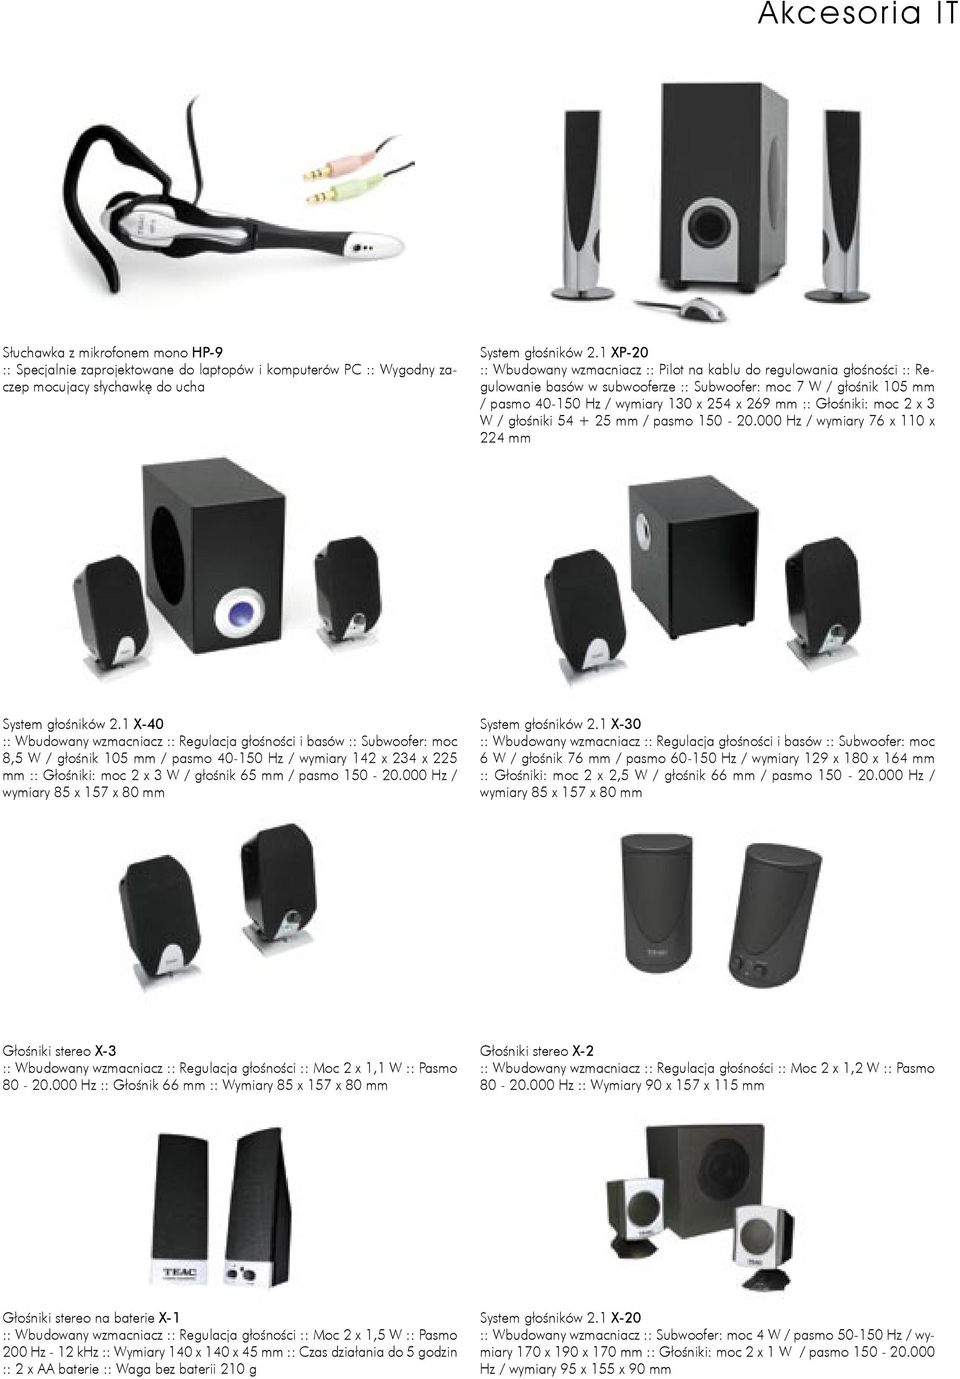 Głośniki: moc 2 x 3 W / głośniki 54 + 25 mm / pasmo 150-20.000 Hz / wymiary 76 x 110 x 224 mm System głośników 2.